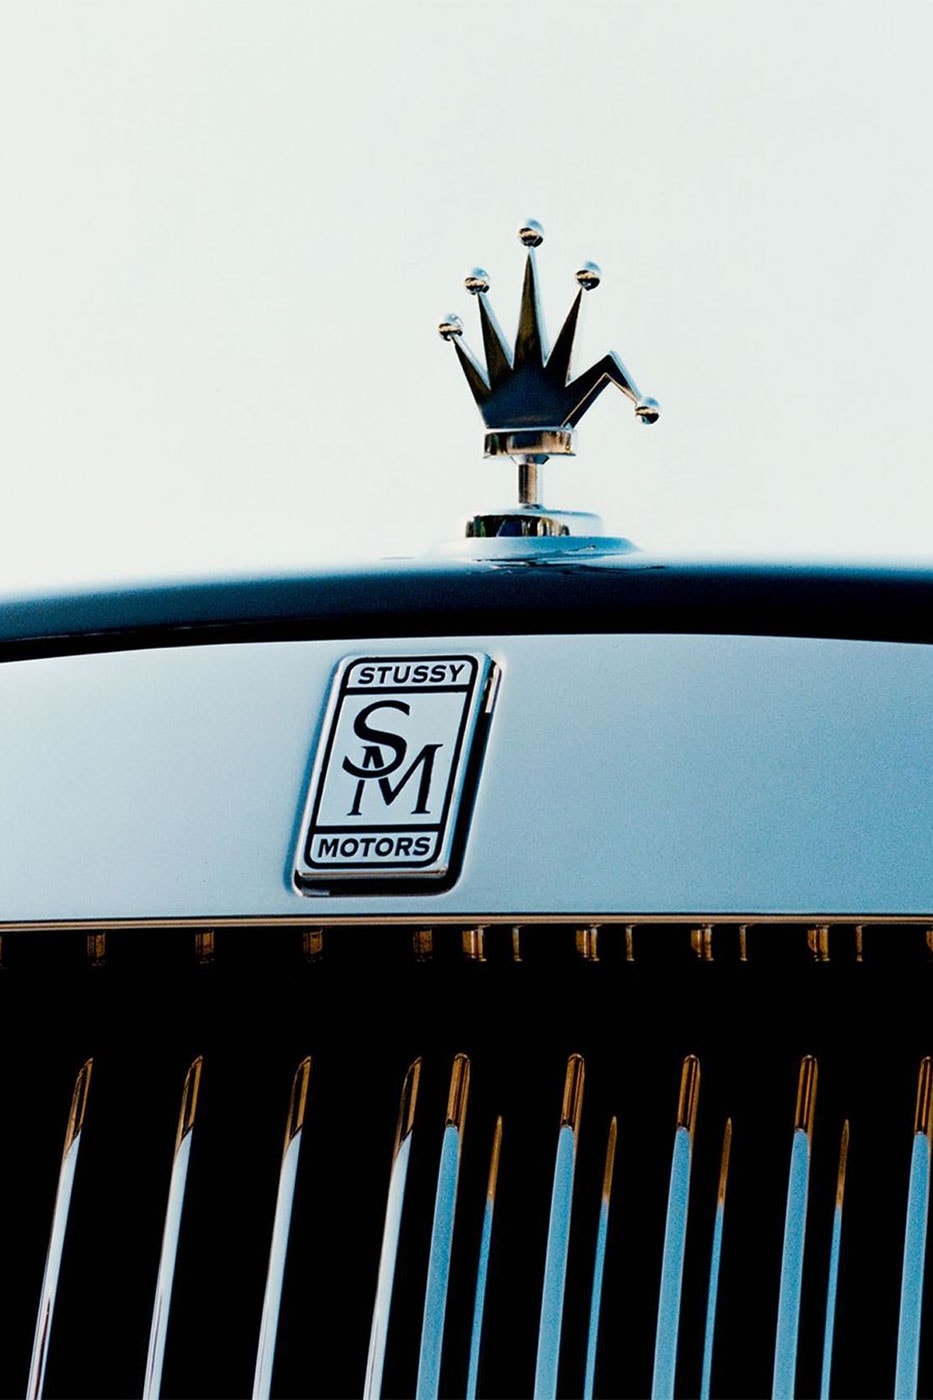 ステューシーがロールスロイスのカスタムカーのティザー画像を公開 Stüssy motors Teases a Custom crown logo collaboration spirit of ectsasy Rolls Royce bmw e36 m3 dirtbike news info image